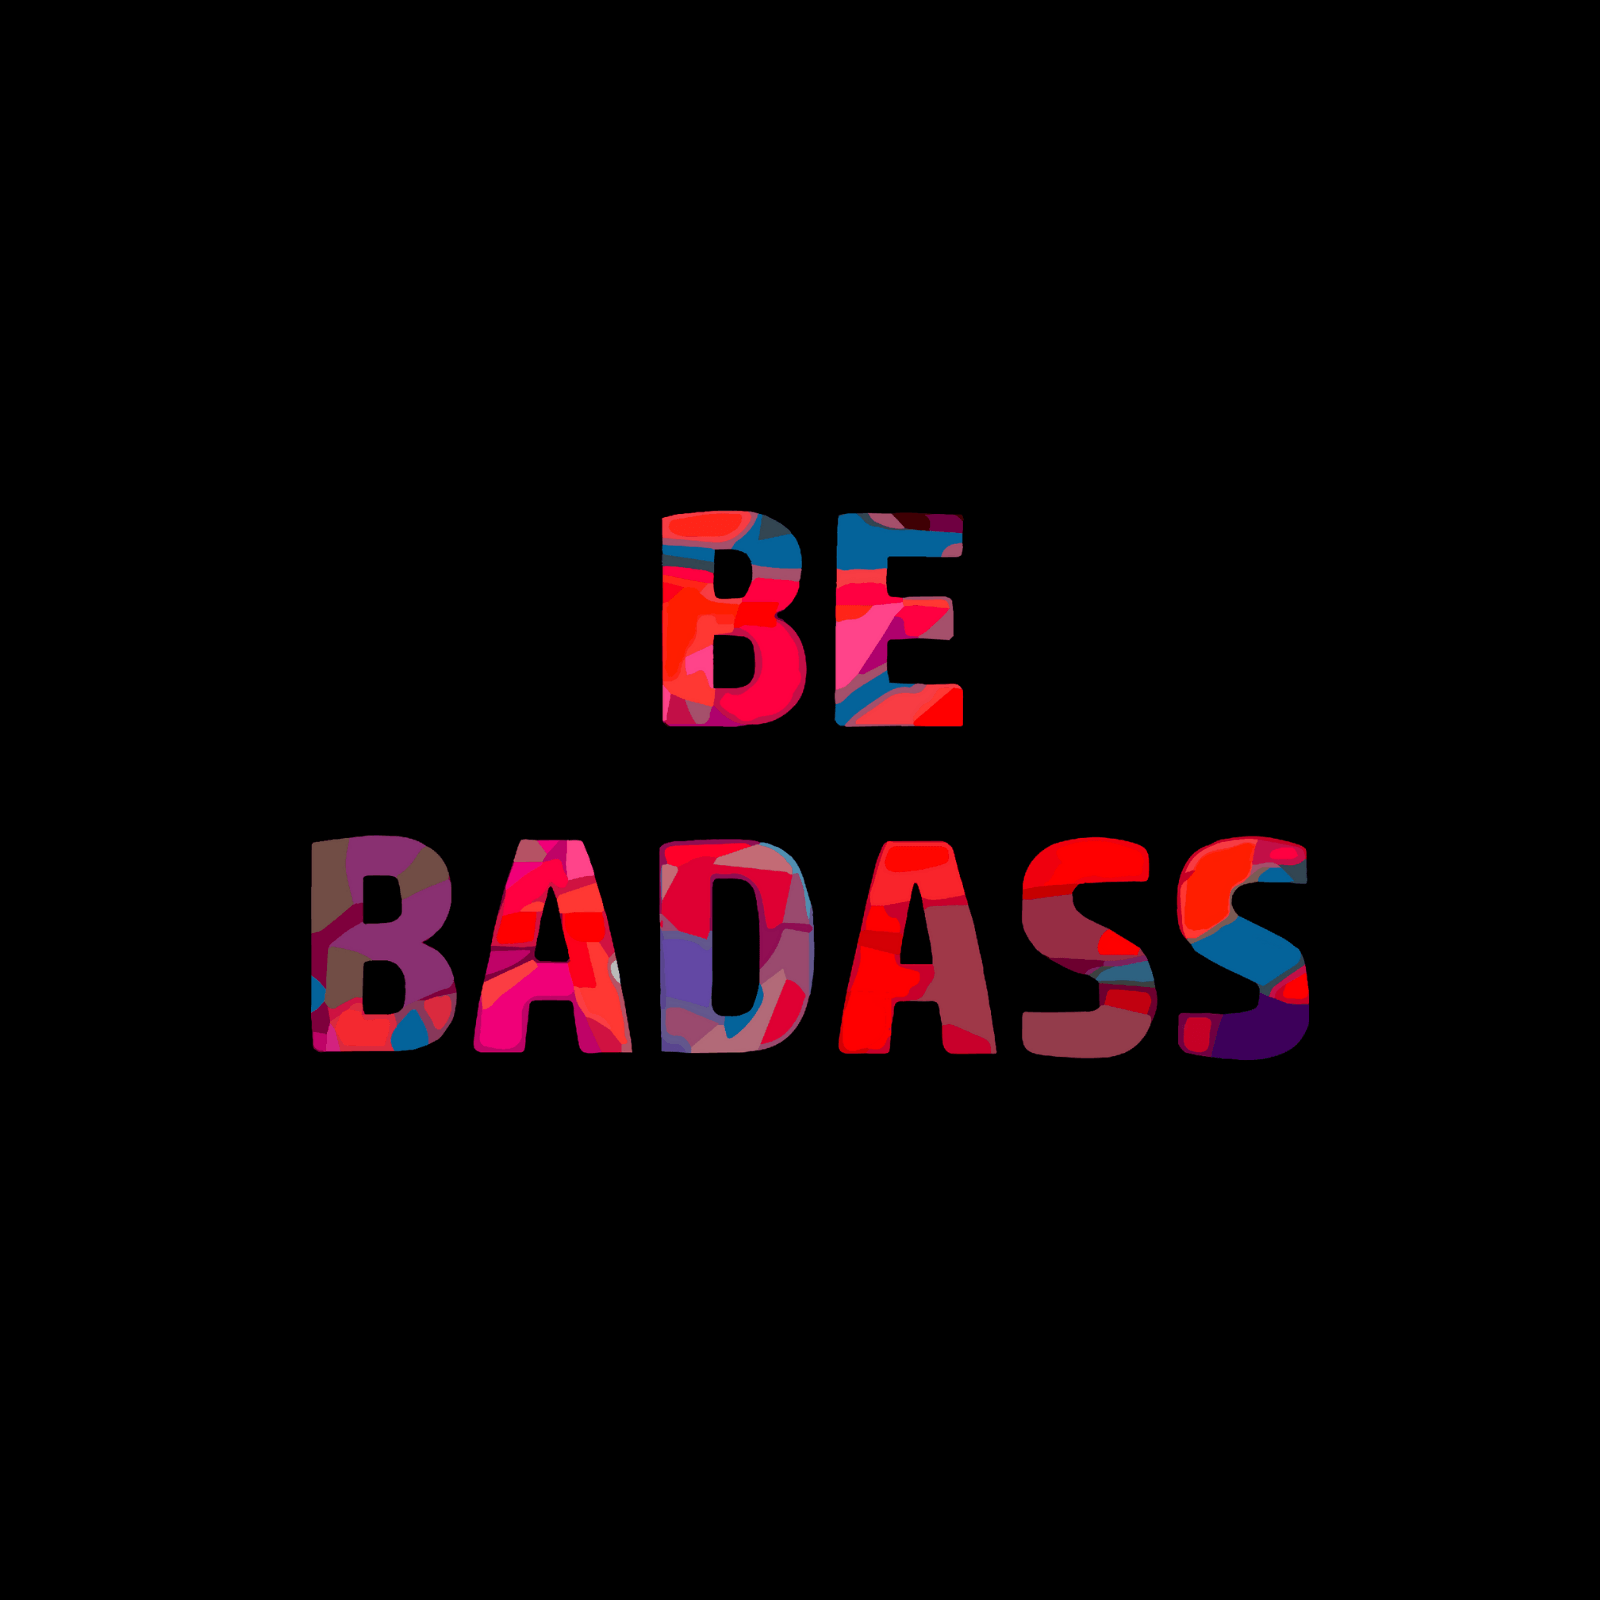 Be Badass - Ken Adams